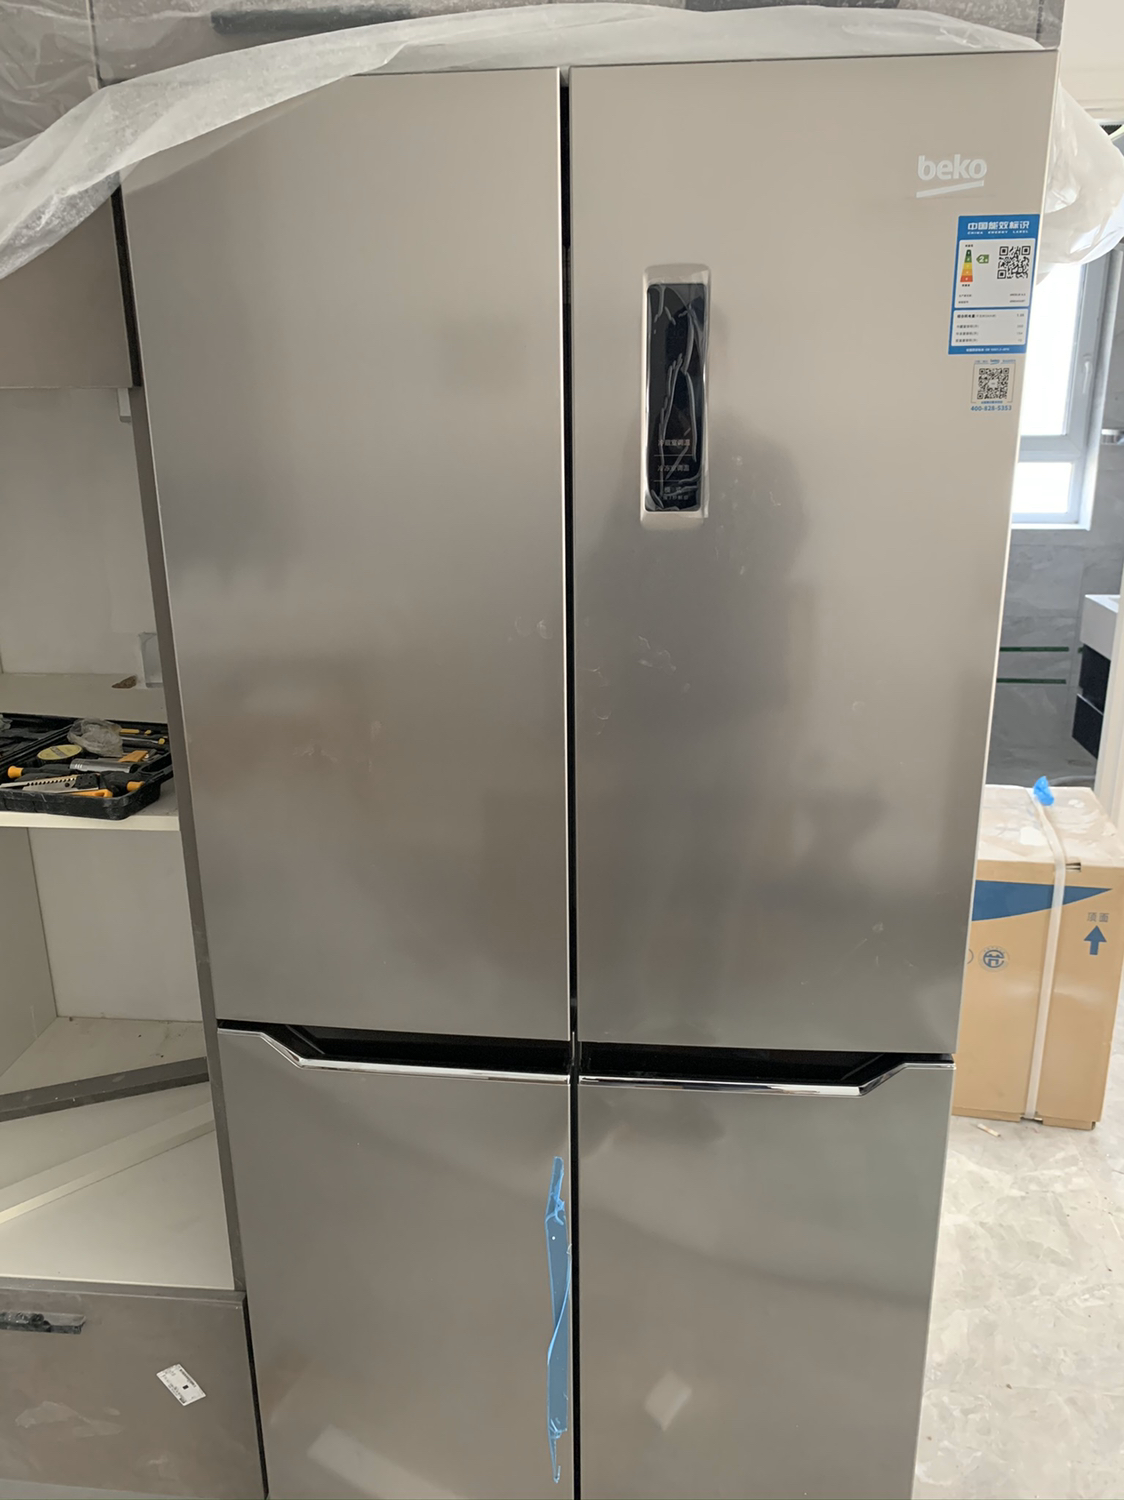 432升 冰箱风冷冰箱变频 多门冰箱 十字对开门冰箱(不锈钢色)晒单图